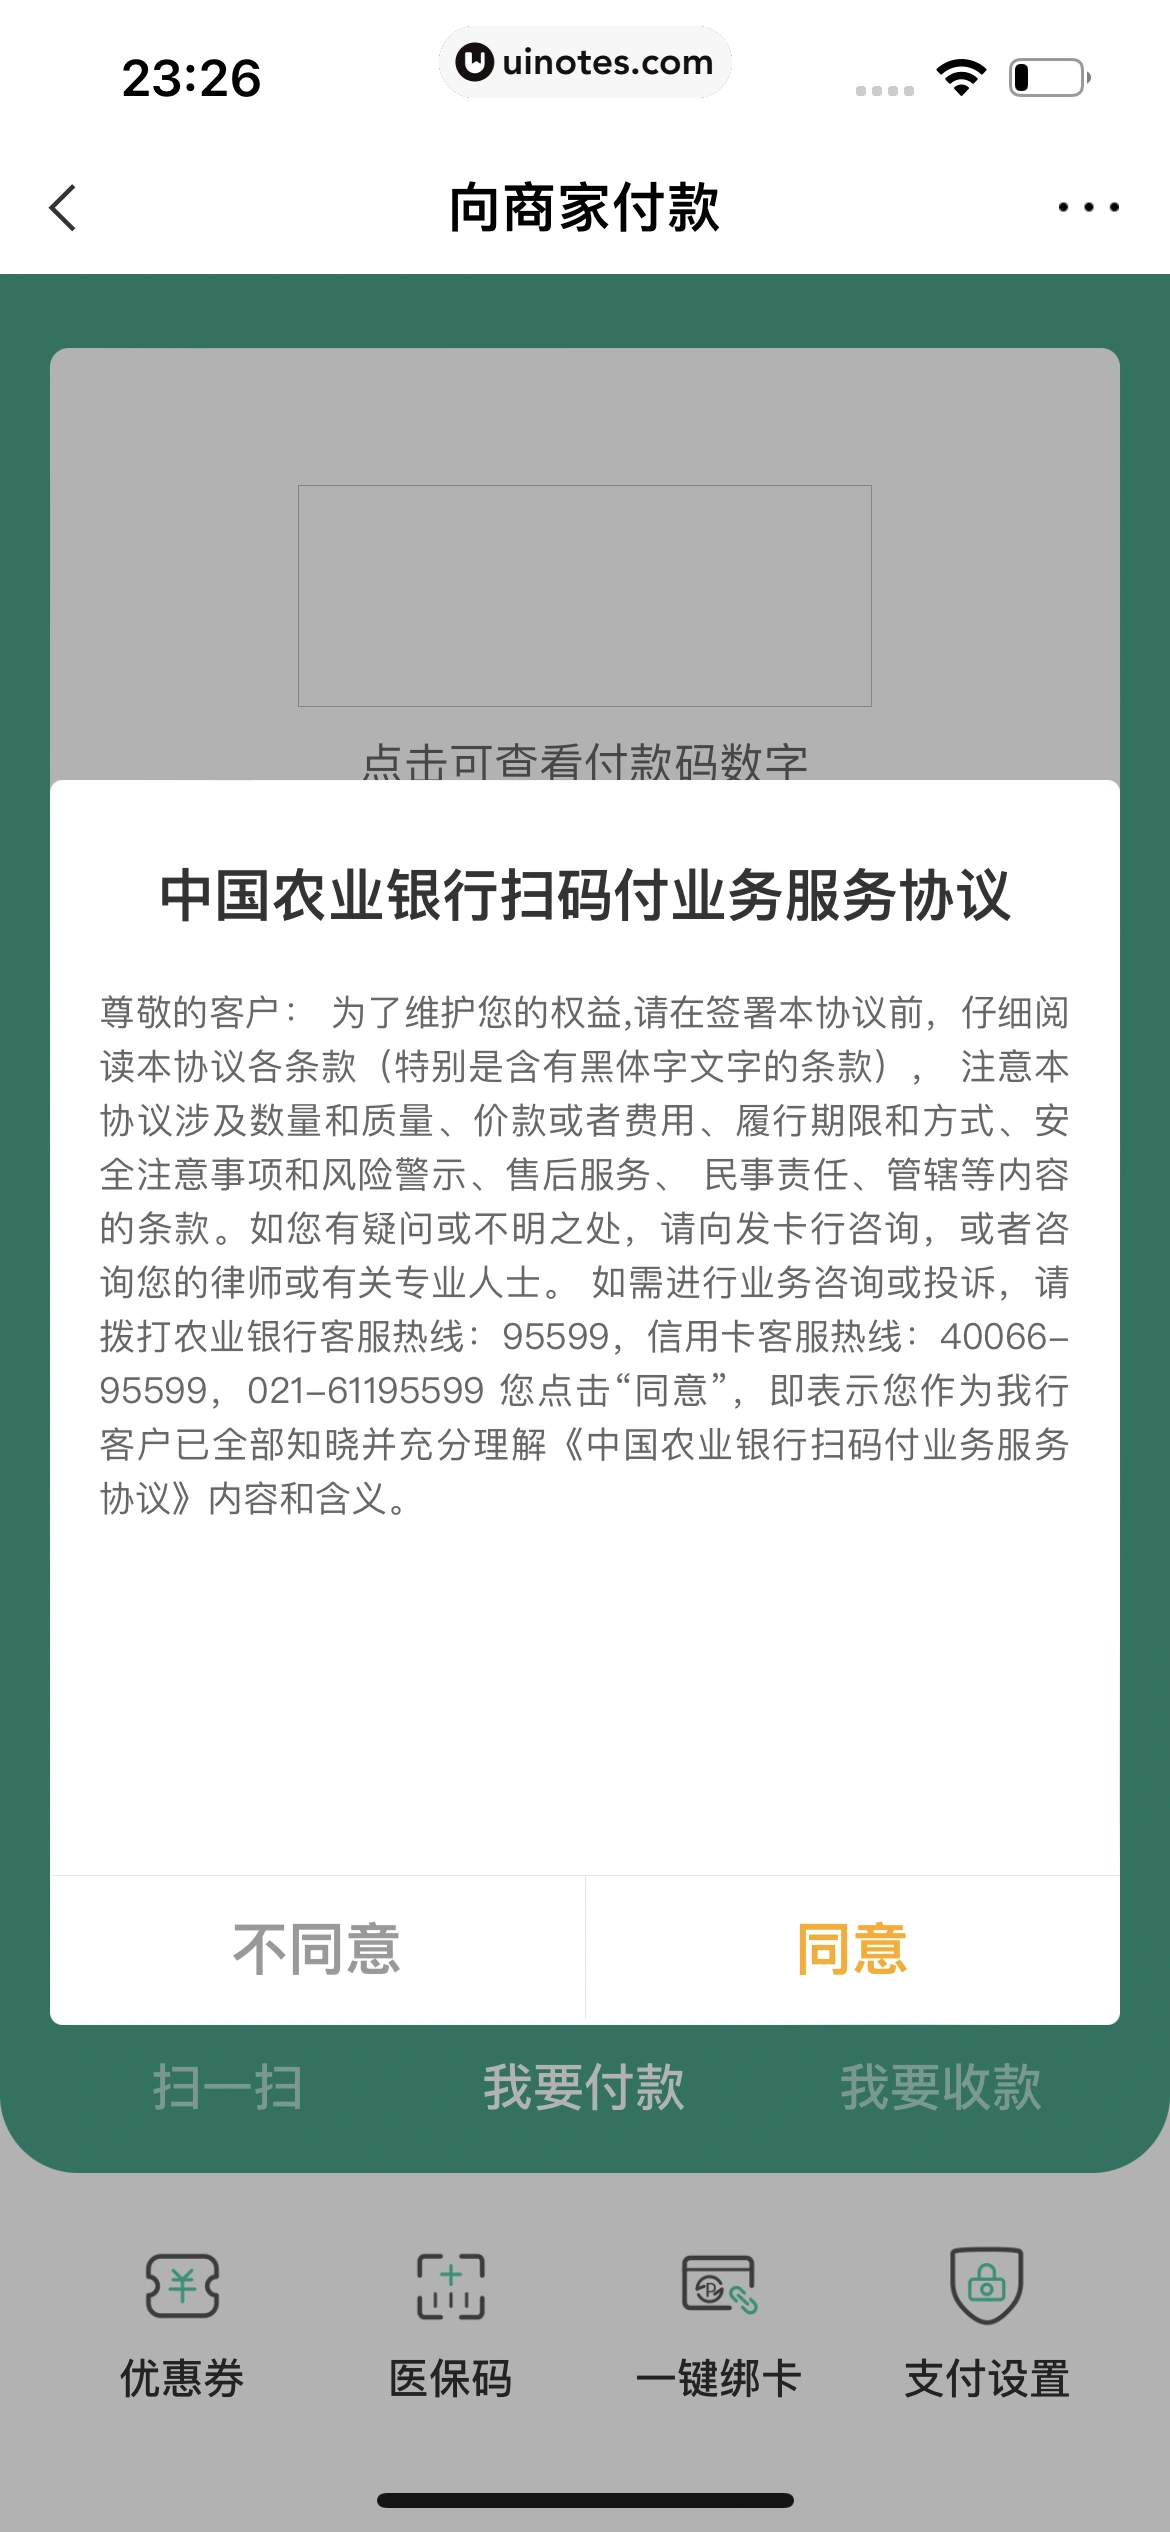 中国农业银行 App 截图 043 - UI Notes